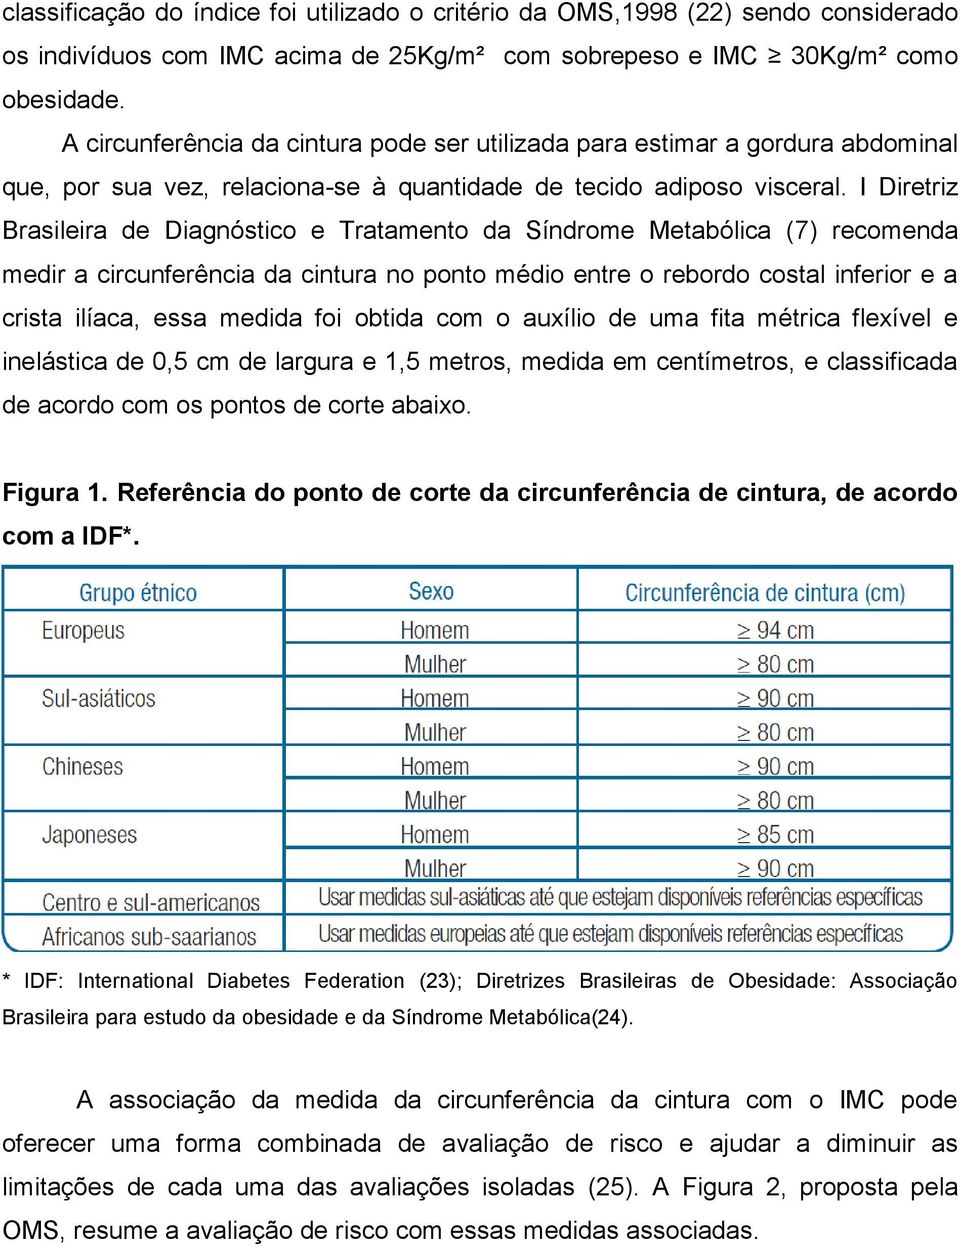 I Diretriz Brasileira de Diagnóstico e Tratamento da Síndrome Metabólica (7) recomenda medir a circunferência da cintura no ponto médio entre o rebordo costal inferior e a crista ilíaca, essa medida